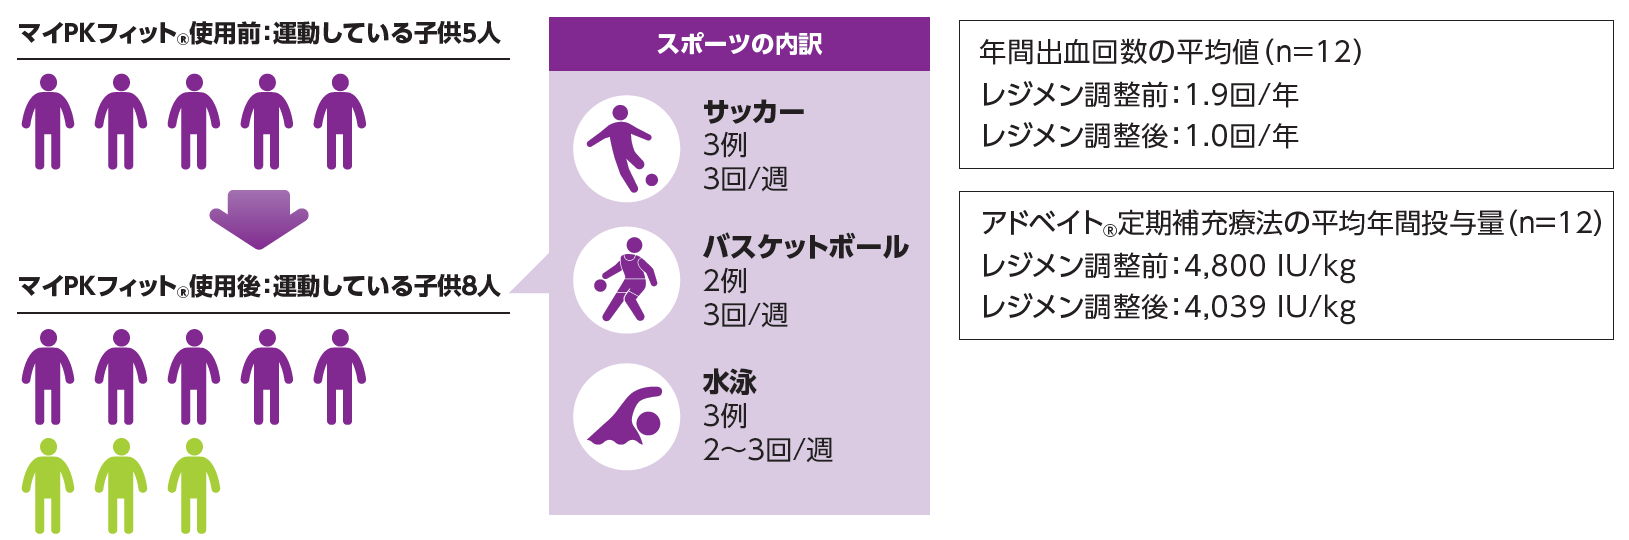 図：小児血友病A患者(n=8)におけるレジメン調整後のスポーツ実施状況(海外データ)